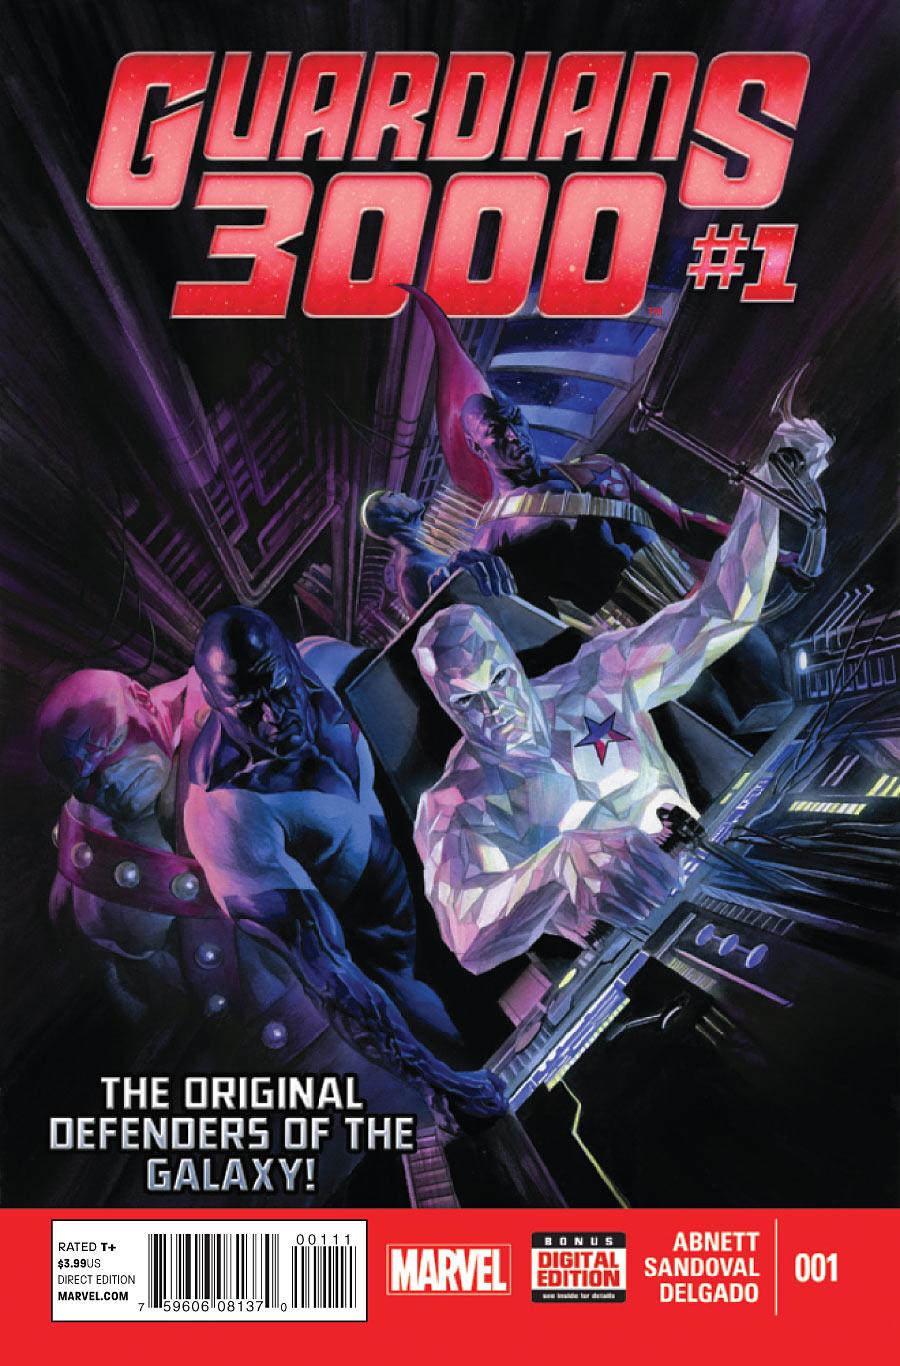 Guardians 3000 Vol. 1 #1